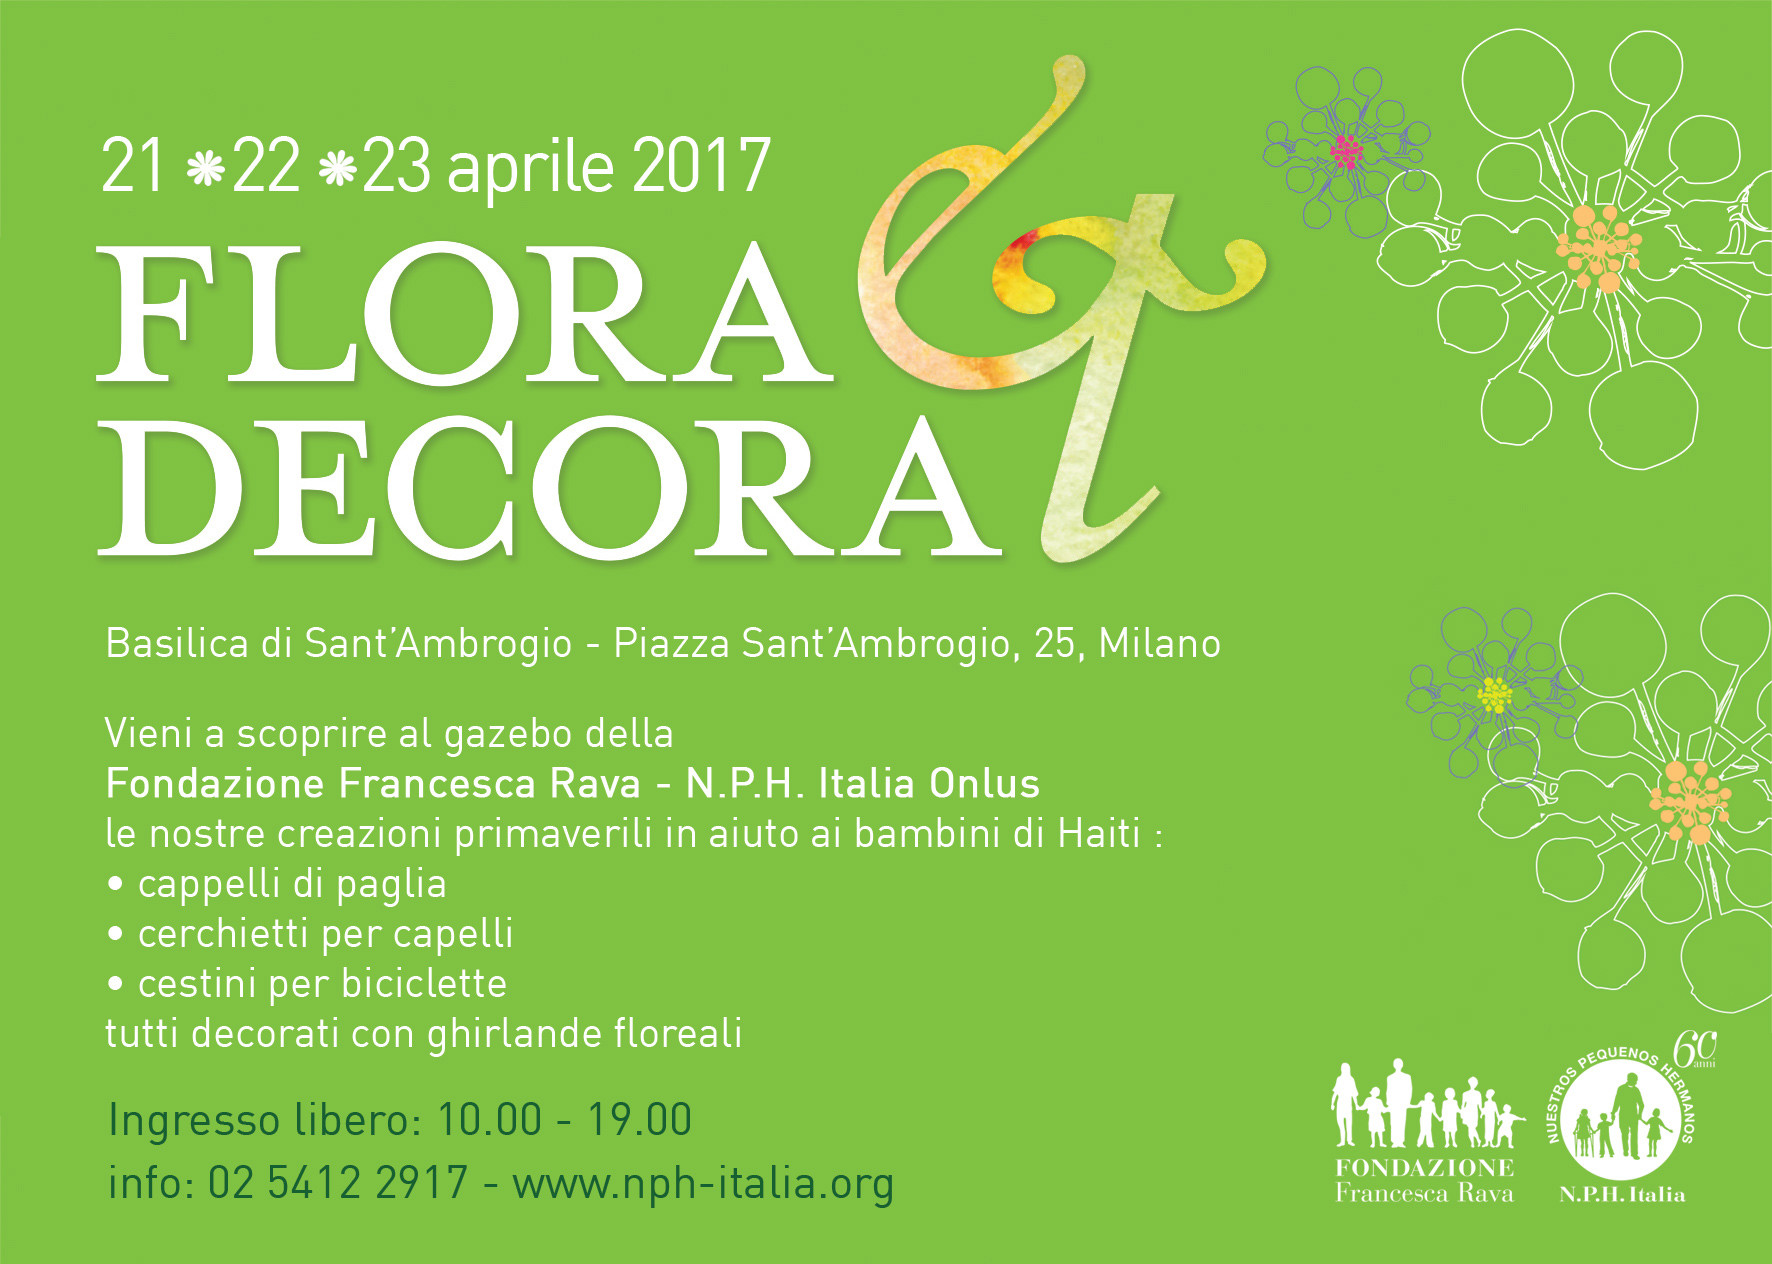 21 - 23 aprile, uno stand della Fondazione Francesca Rava a Flora et Decora a Milano.